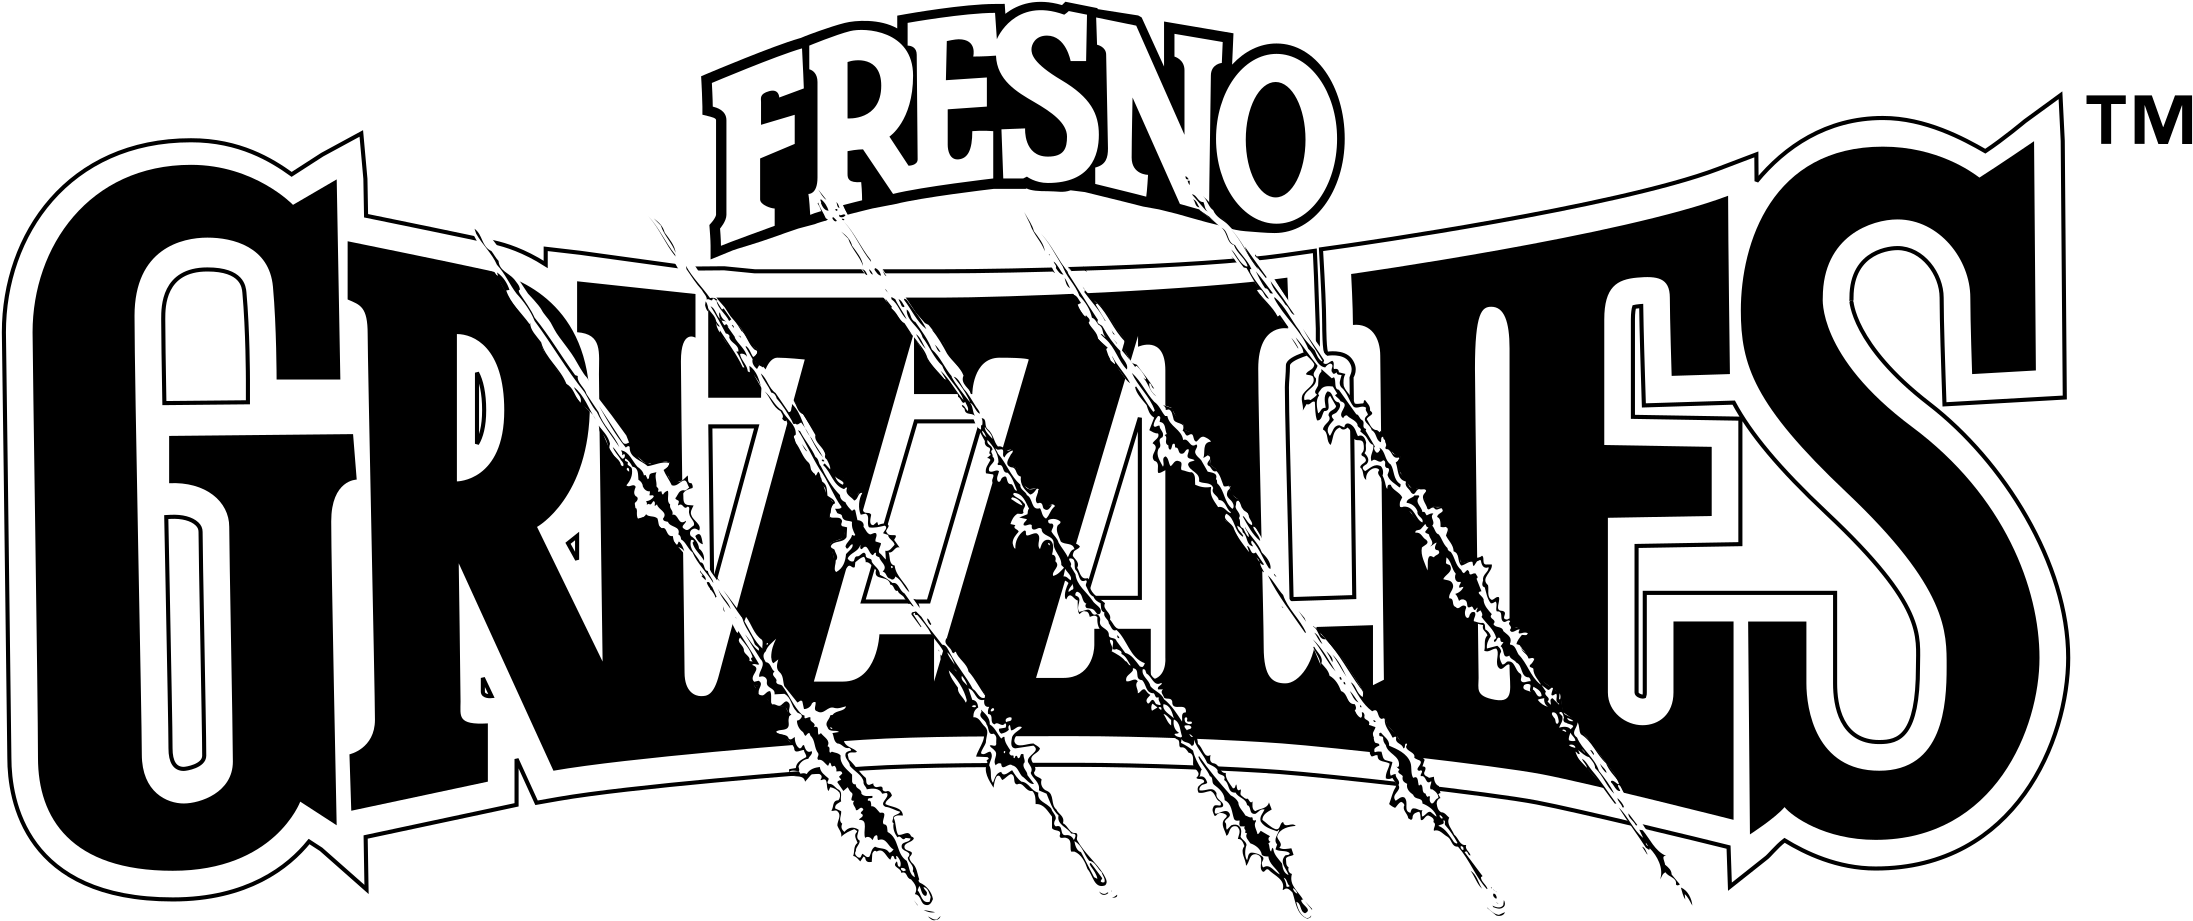 Fresno Grizzlies Logo Png Transparent - Fresno Grizzlies Clipart (2400x2400), Png Download